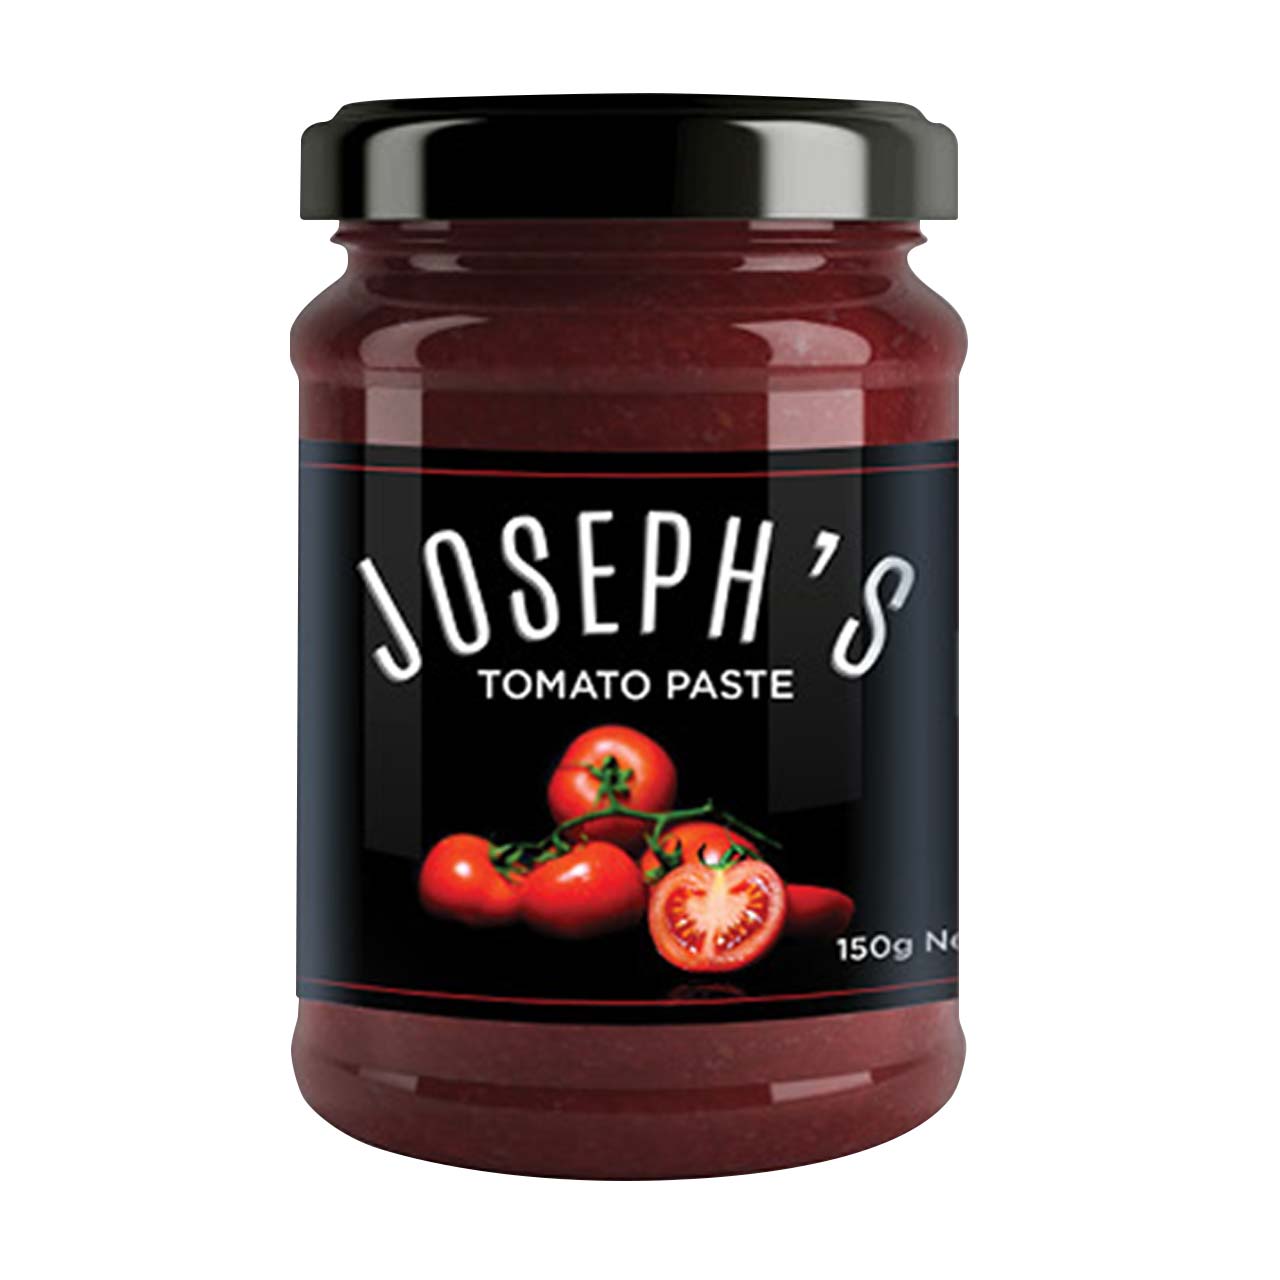 Josephs-Tomato-Paste-front-white